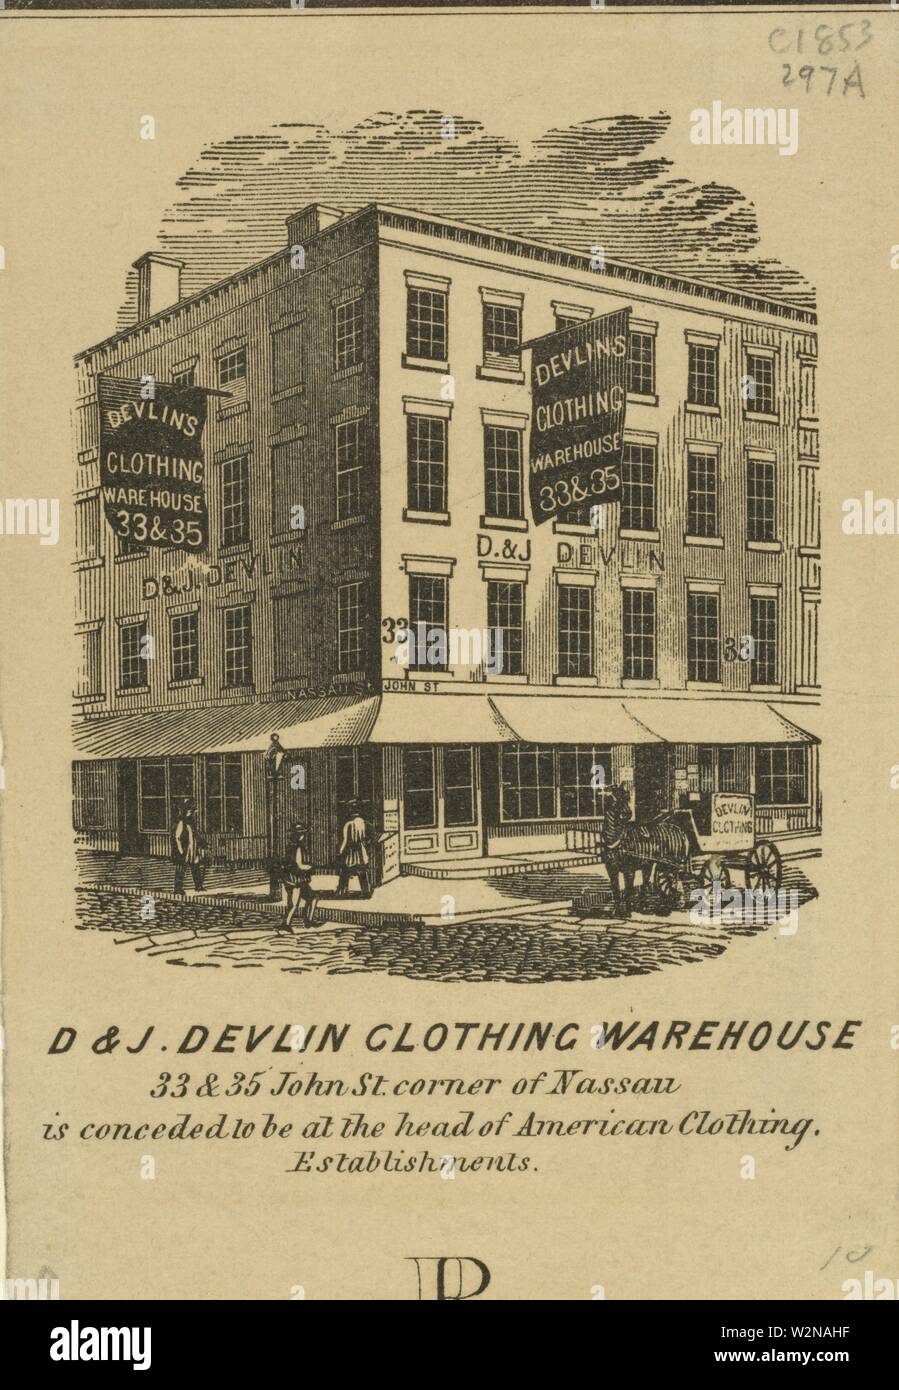 D&J. Devlin Kleidung Lager, 33 & 35 John St. Ecke von Nassau, wird  zugestanden, an der Spitze der amerikanischen Kleidung zu sein. Betriebe.  Eno, Amos Stockfotografie - Alamy